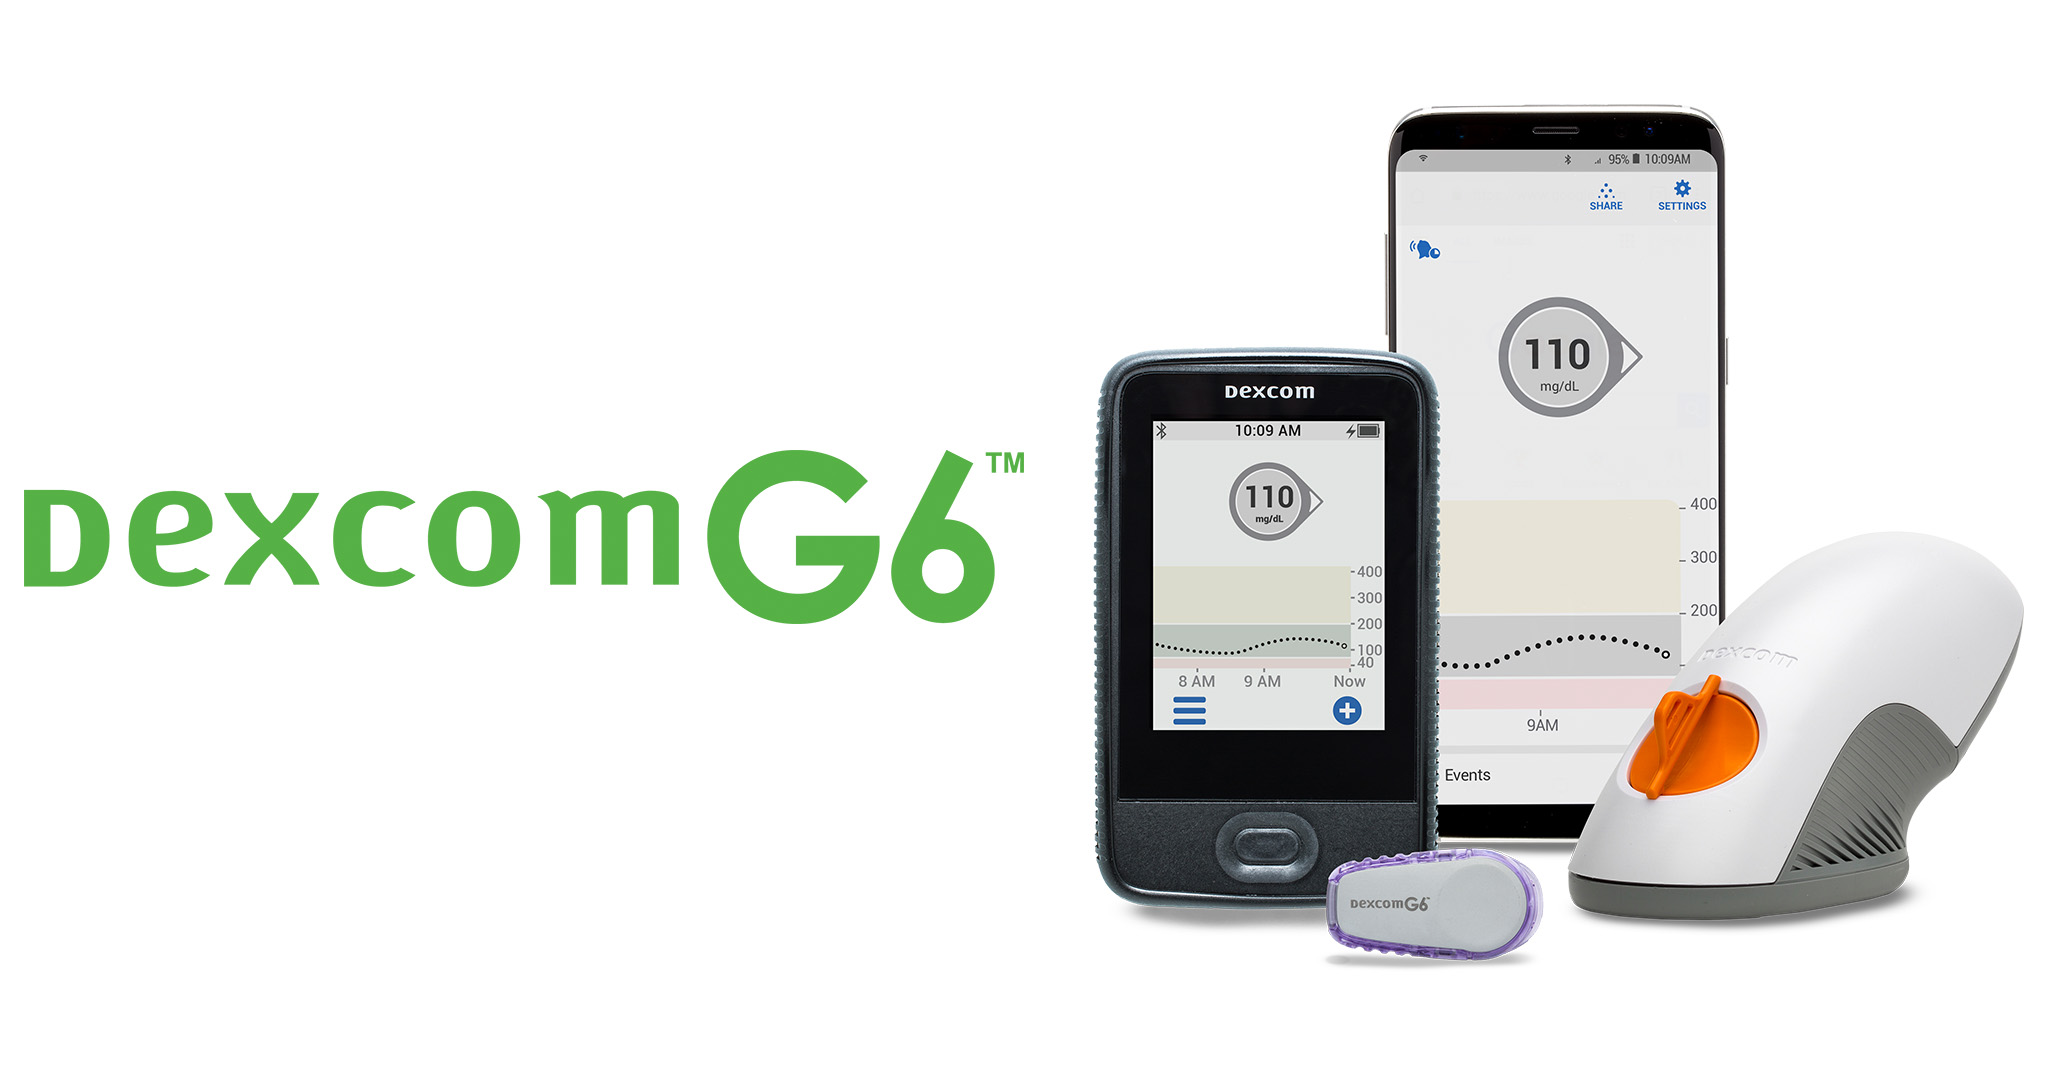 Dexcom G6 - Thiết bị đo đường huyết tự động không cần lấy máu mao mạch